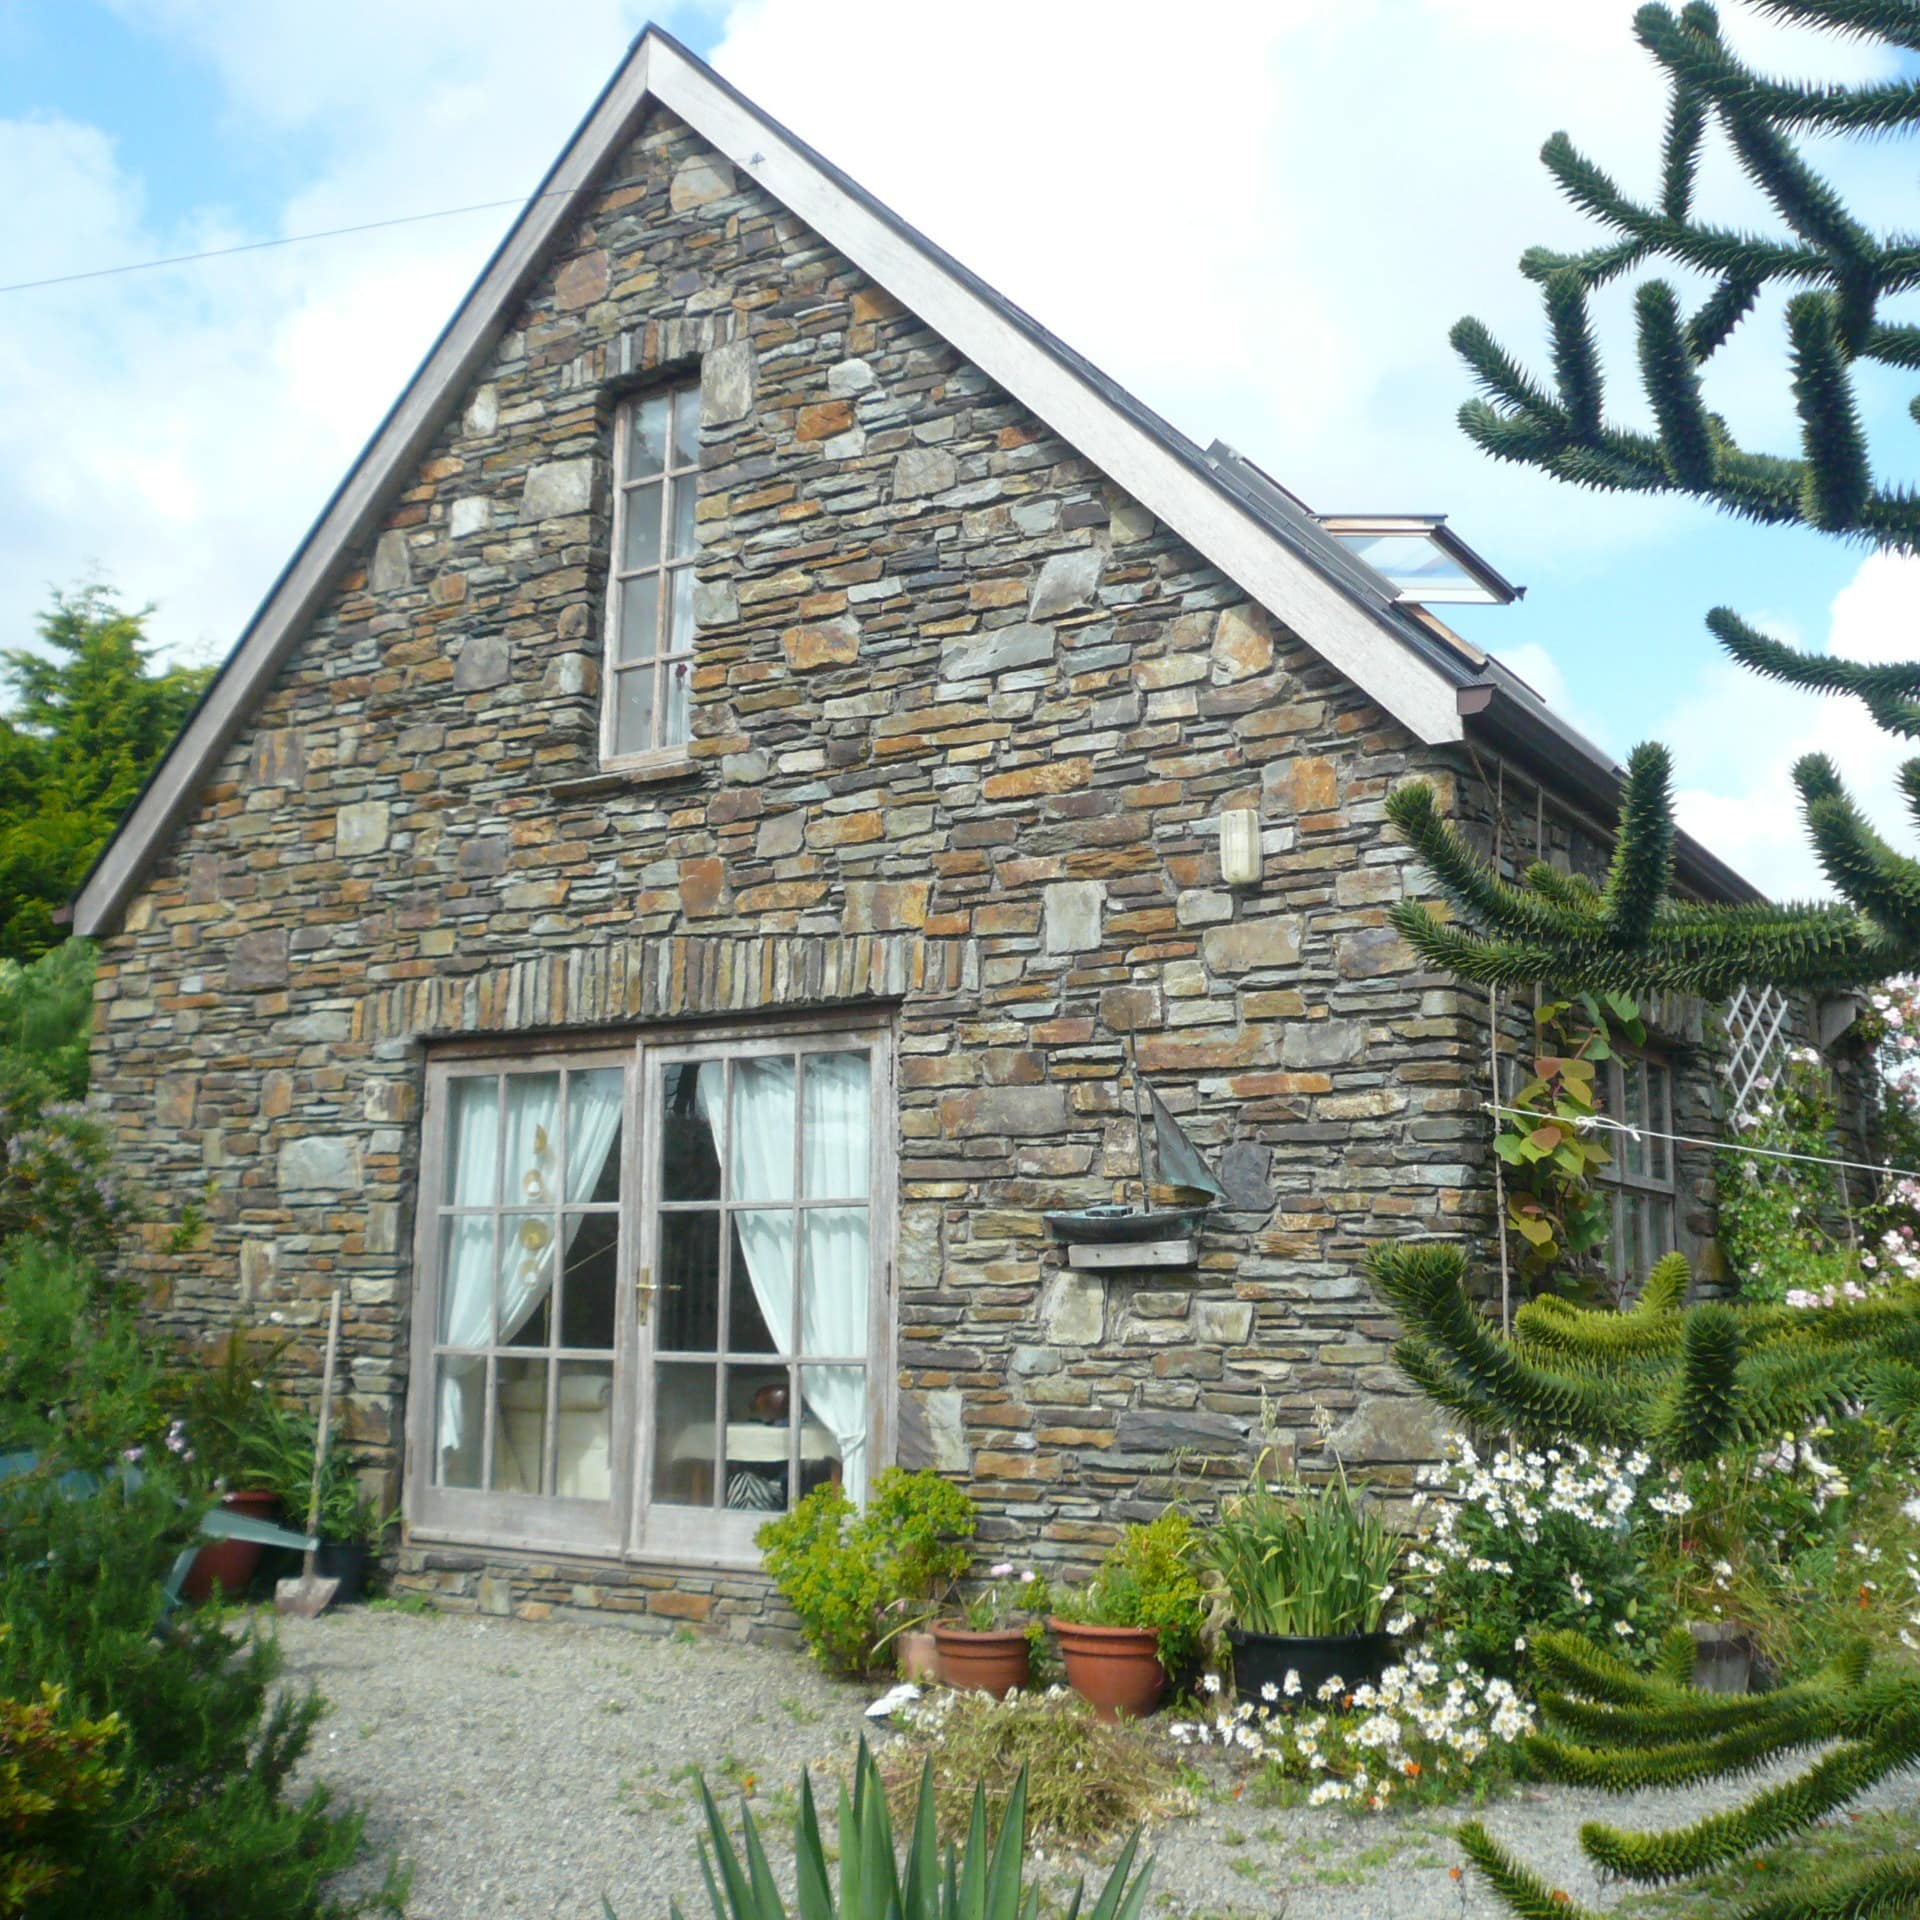 Ein Ferienhaus in Irland aus Stein umgeben von einem Garten